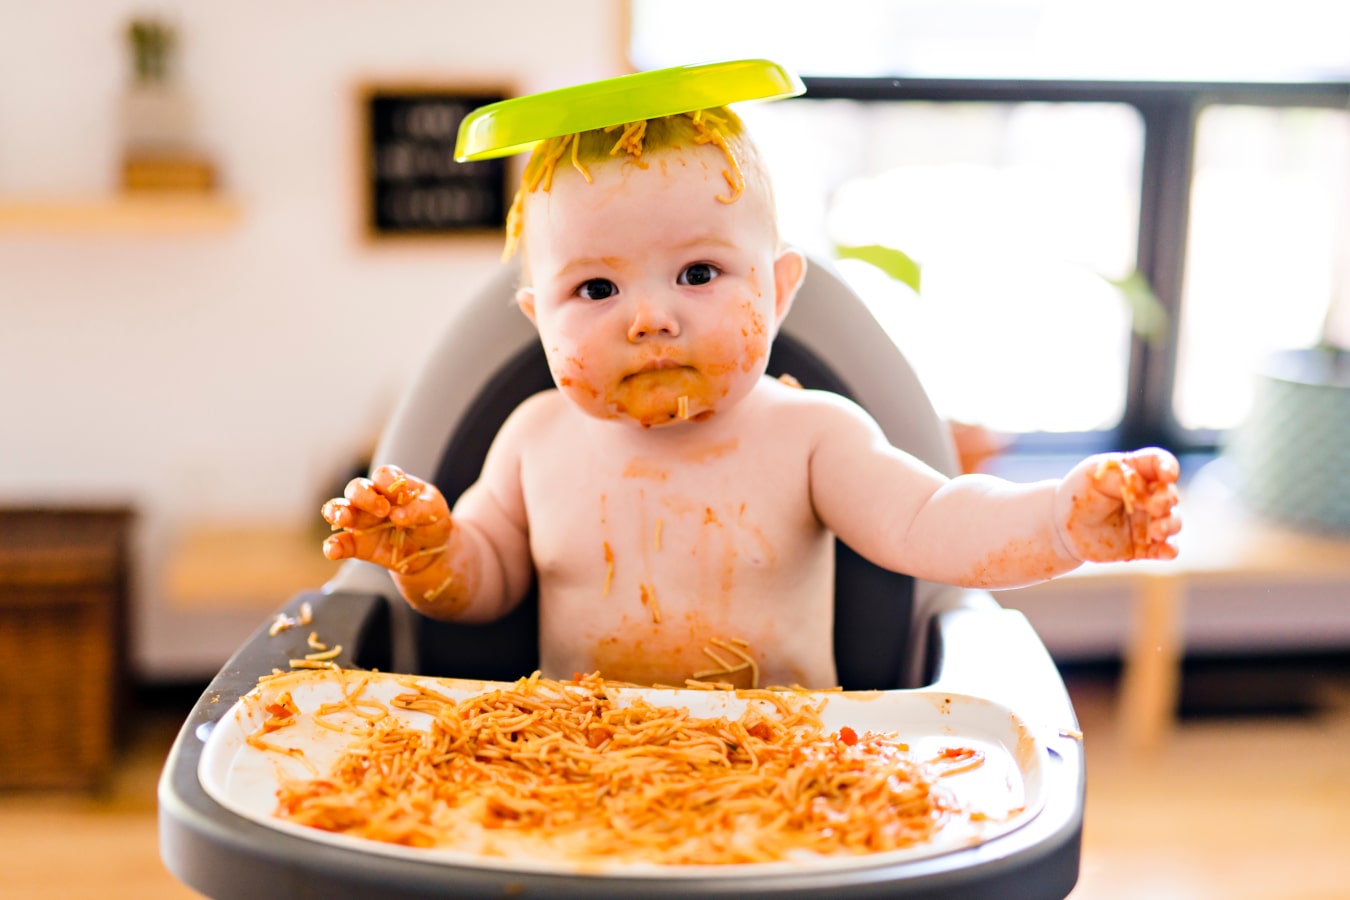 Brudne od spaghetti dziecko siedzi na krzesełku do karmienia, ma talerz  jedzeniem na głowie